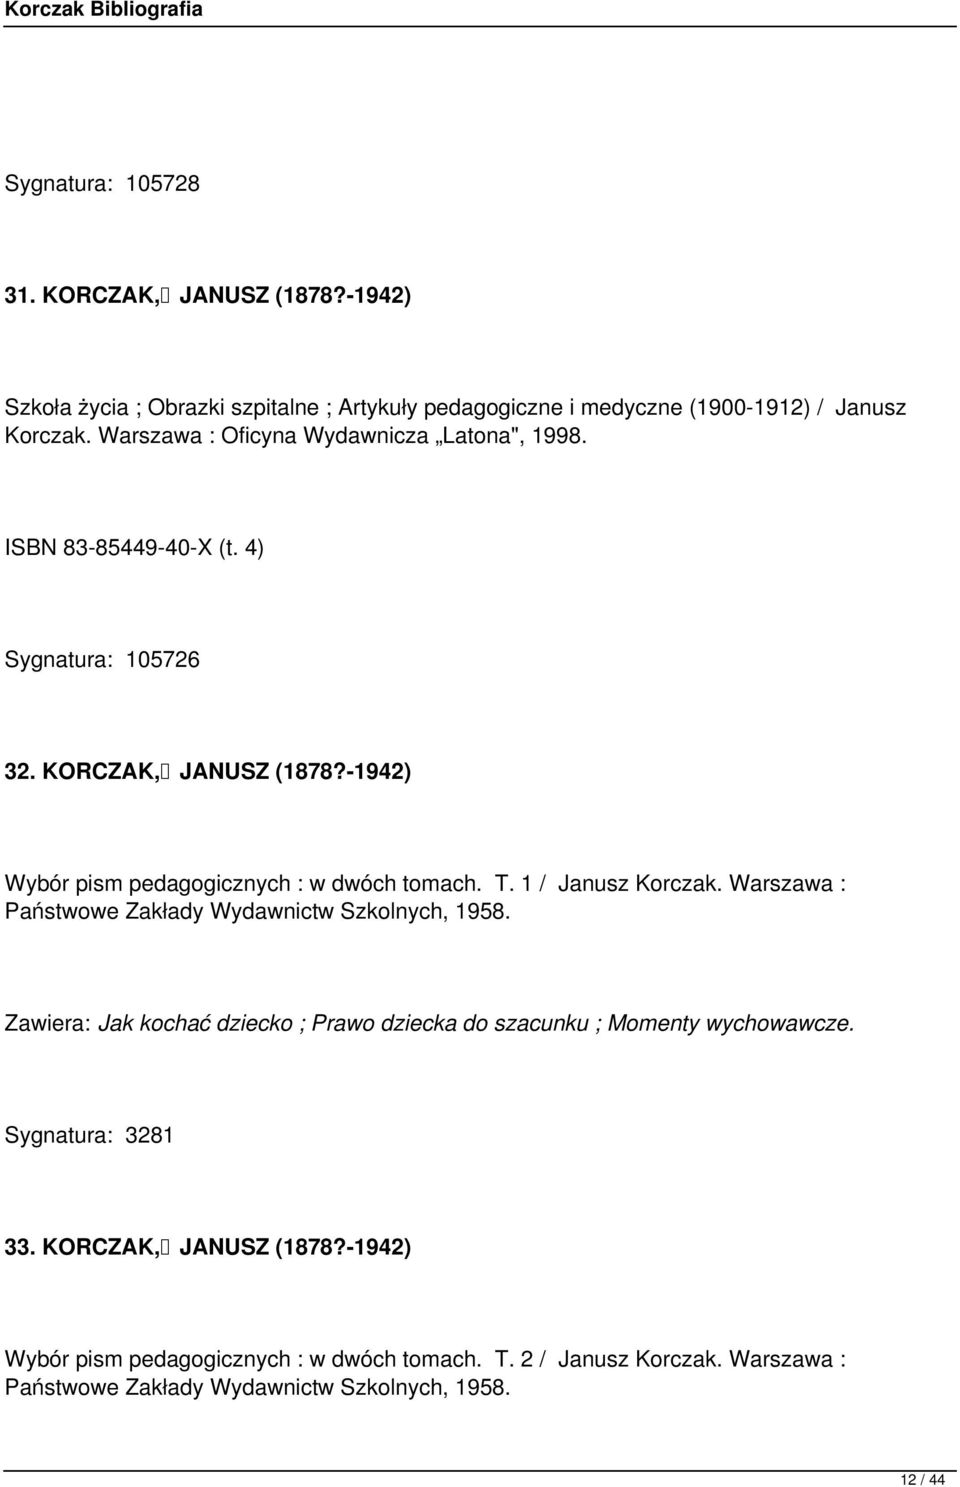 -1942) Wybór pism pedagogicznych : w dwóch tomach. T. 1 / Janusz Korczak. Warszawa : Państwowe Zakłady Wydawnictw Szkolnych, 1958.